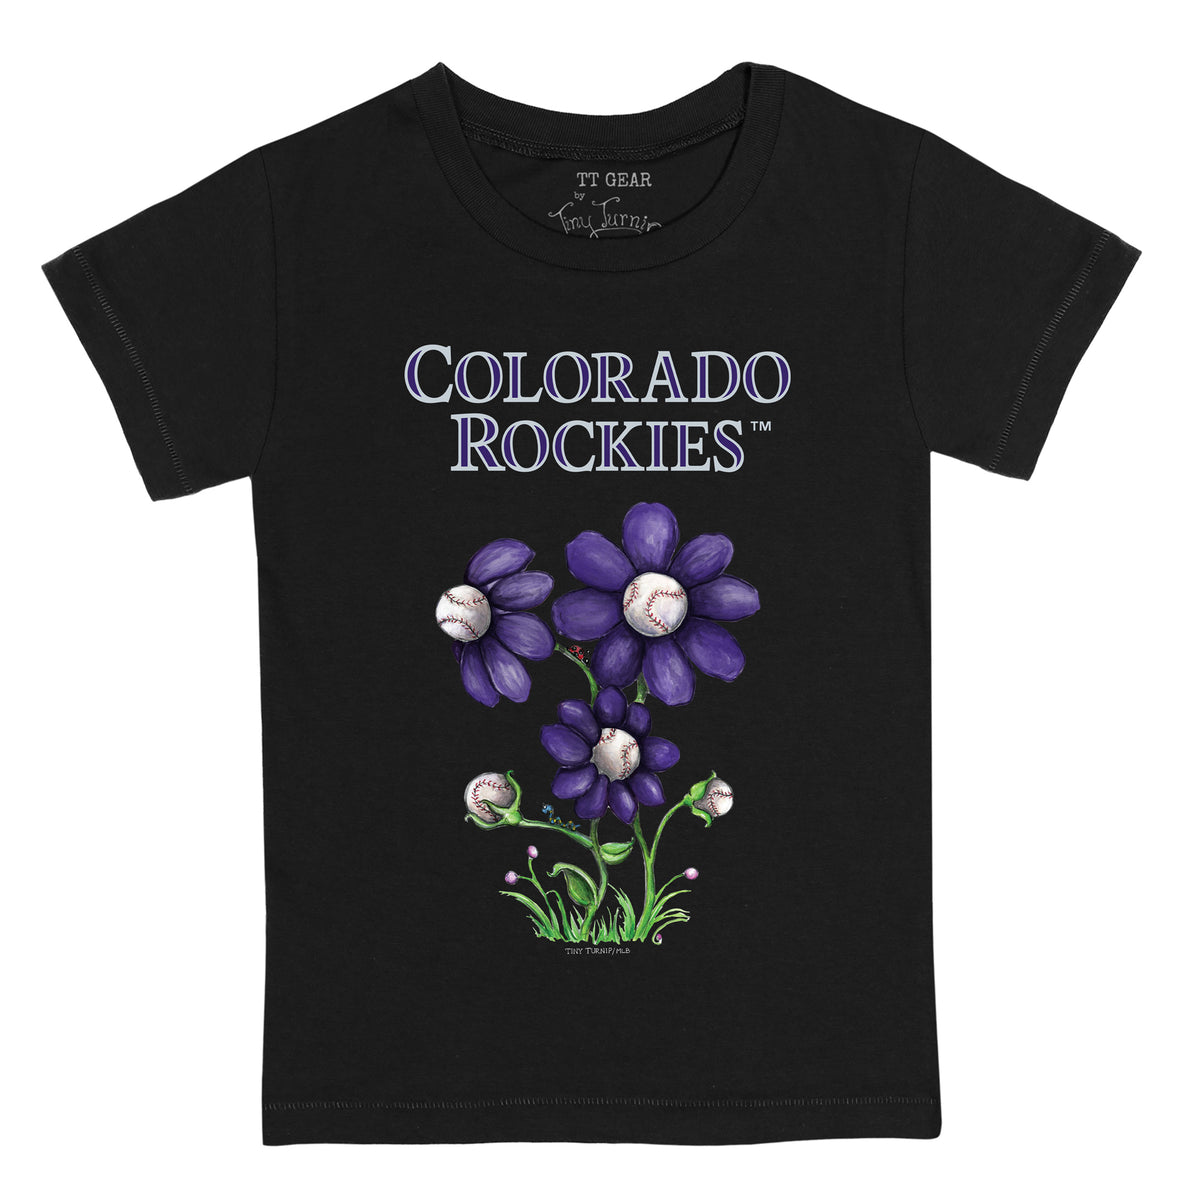 Colorado Rockies Blooming Baseballs Tee Shirt